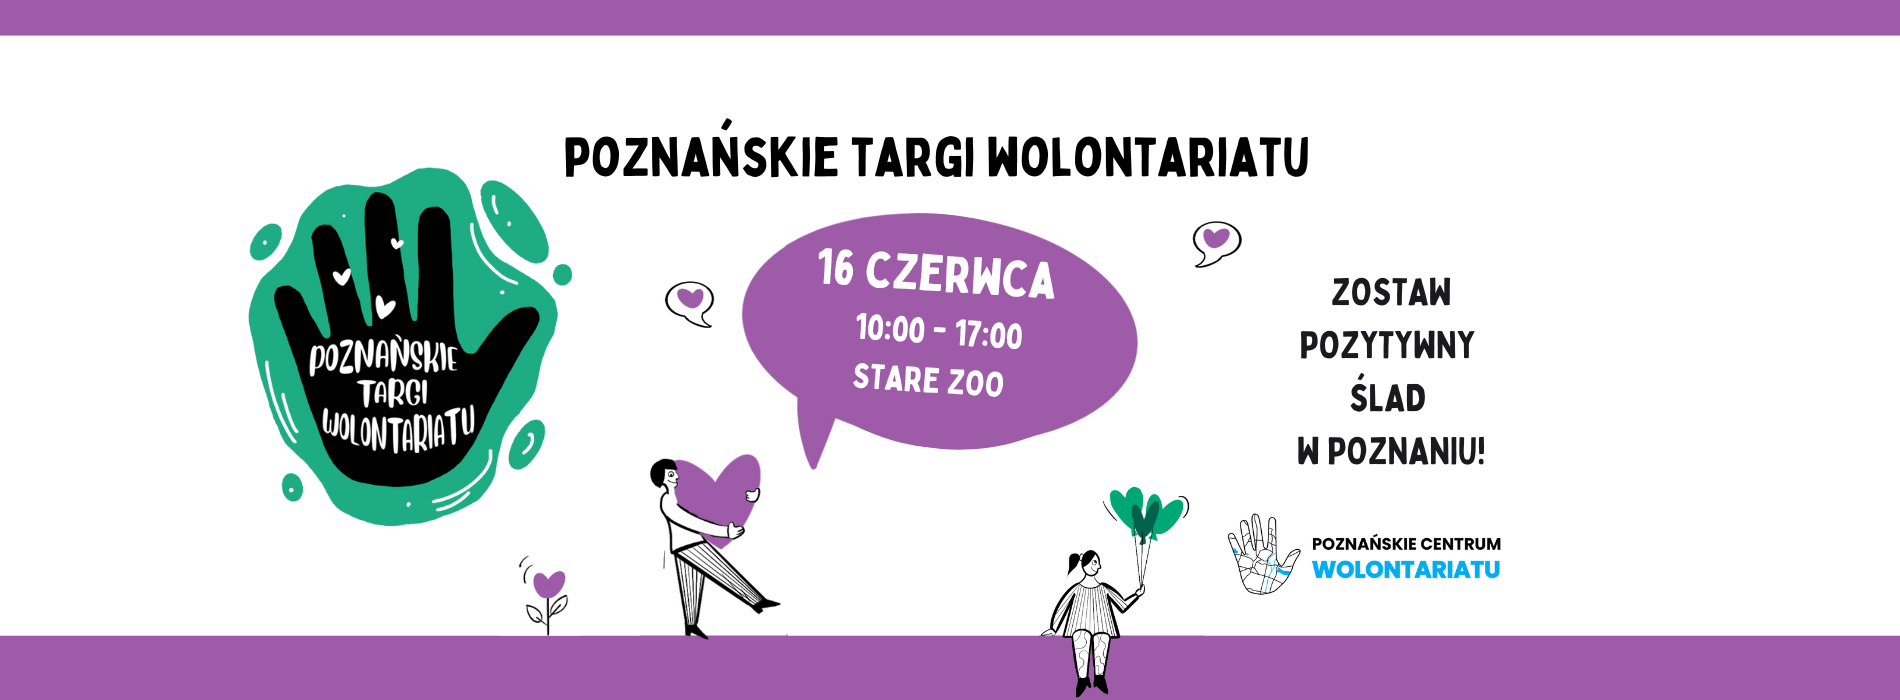 Poznańskie targi wolontariatu 16 czerwca w Starym ZOO. Zaprasza Poznańskie Centrum Wolontariatu